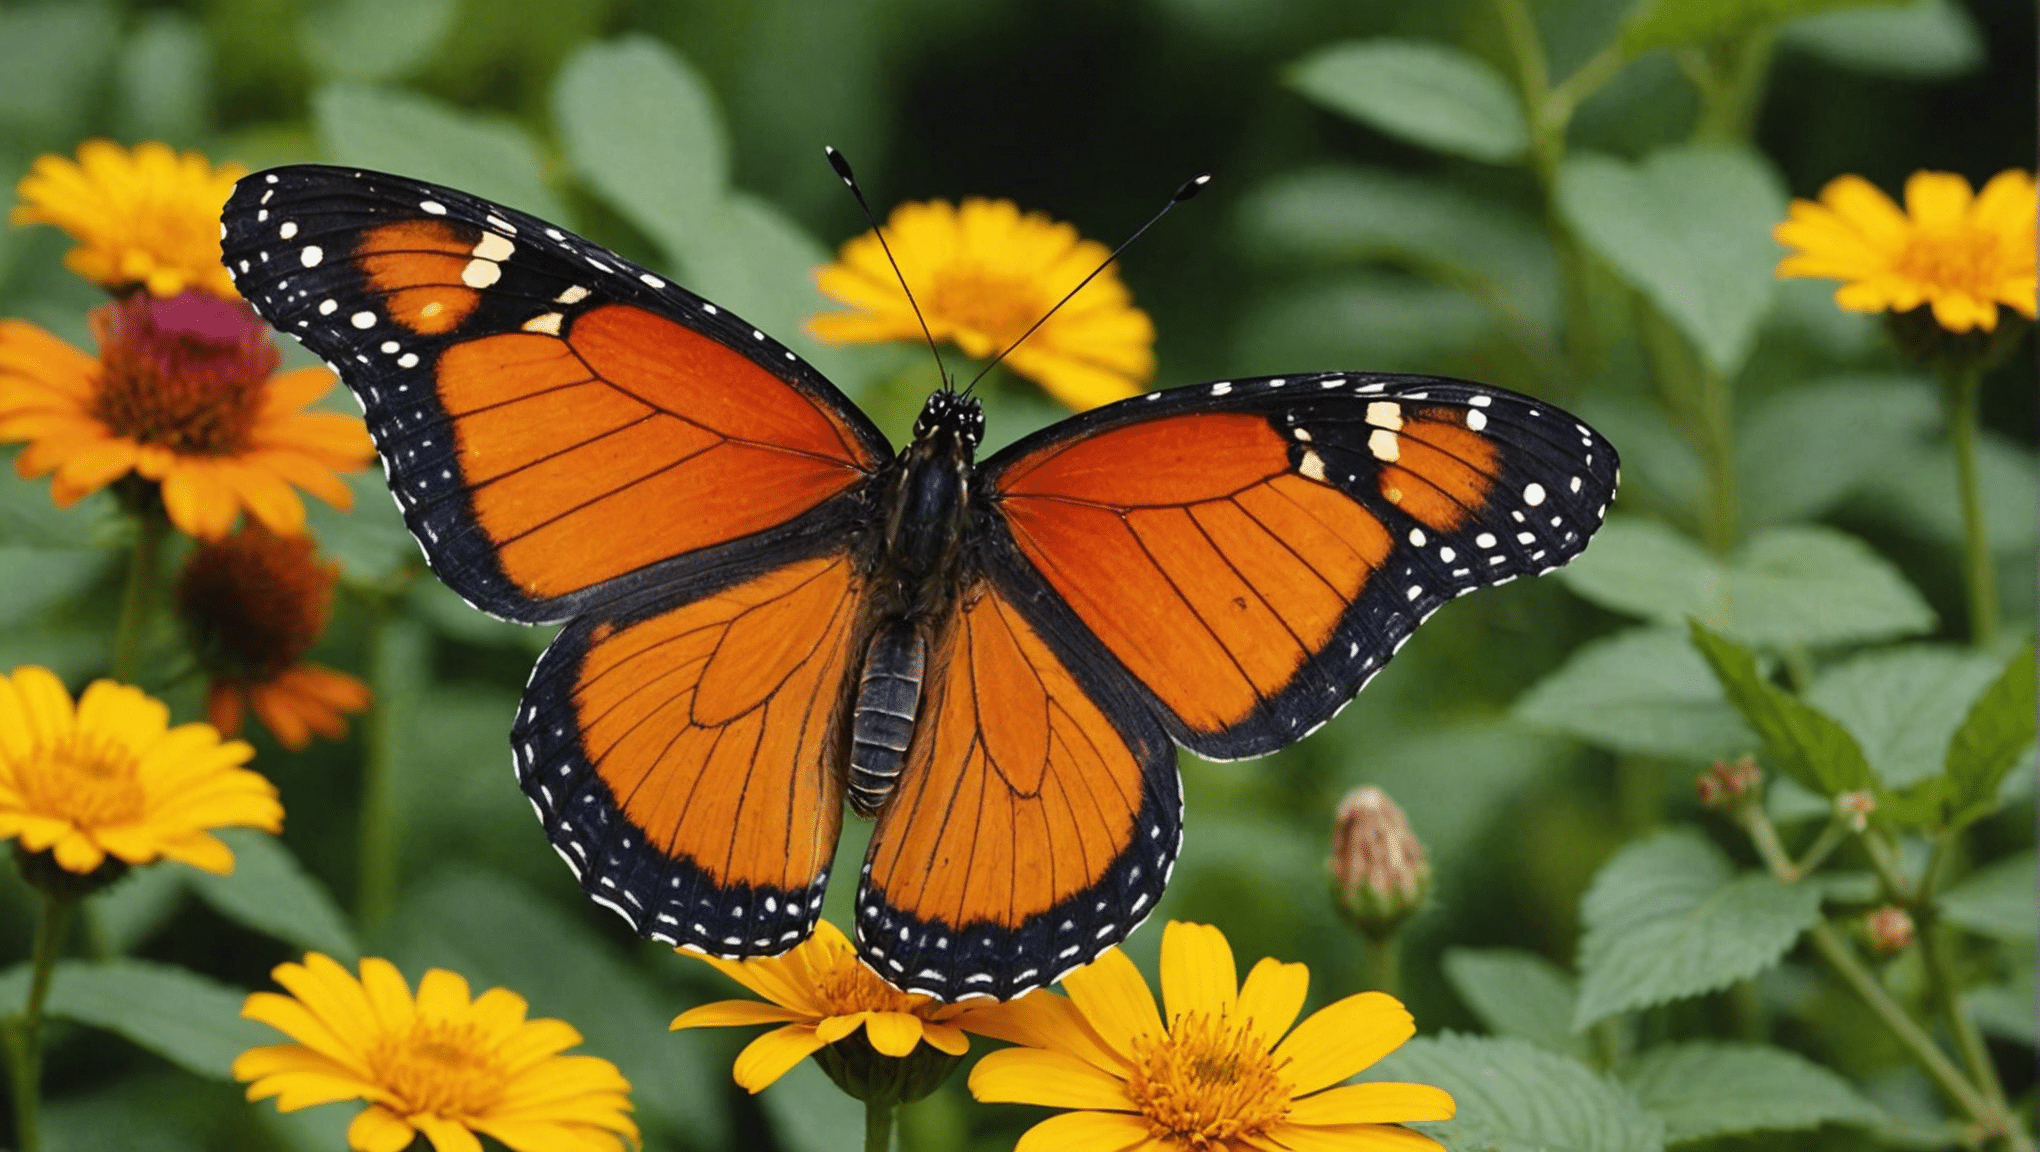 ontdek leuke en fascinerende feiten over vlinders met onze boeiende inhoud.